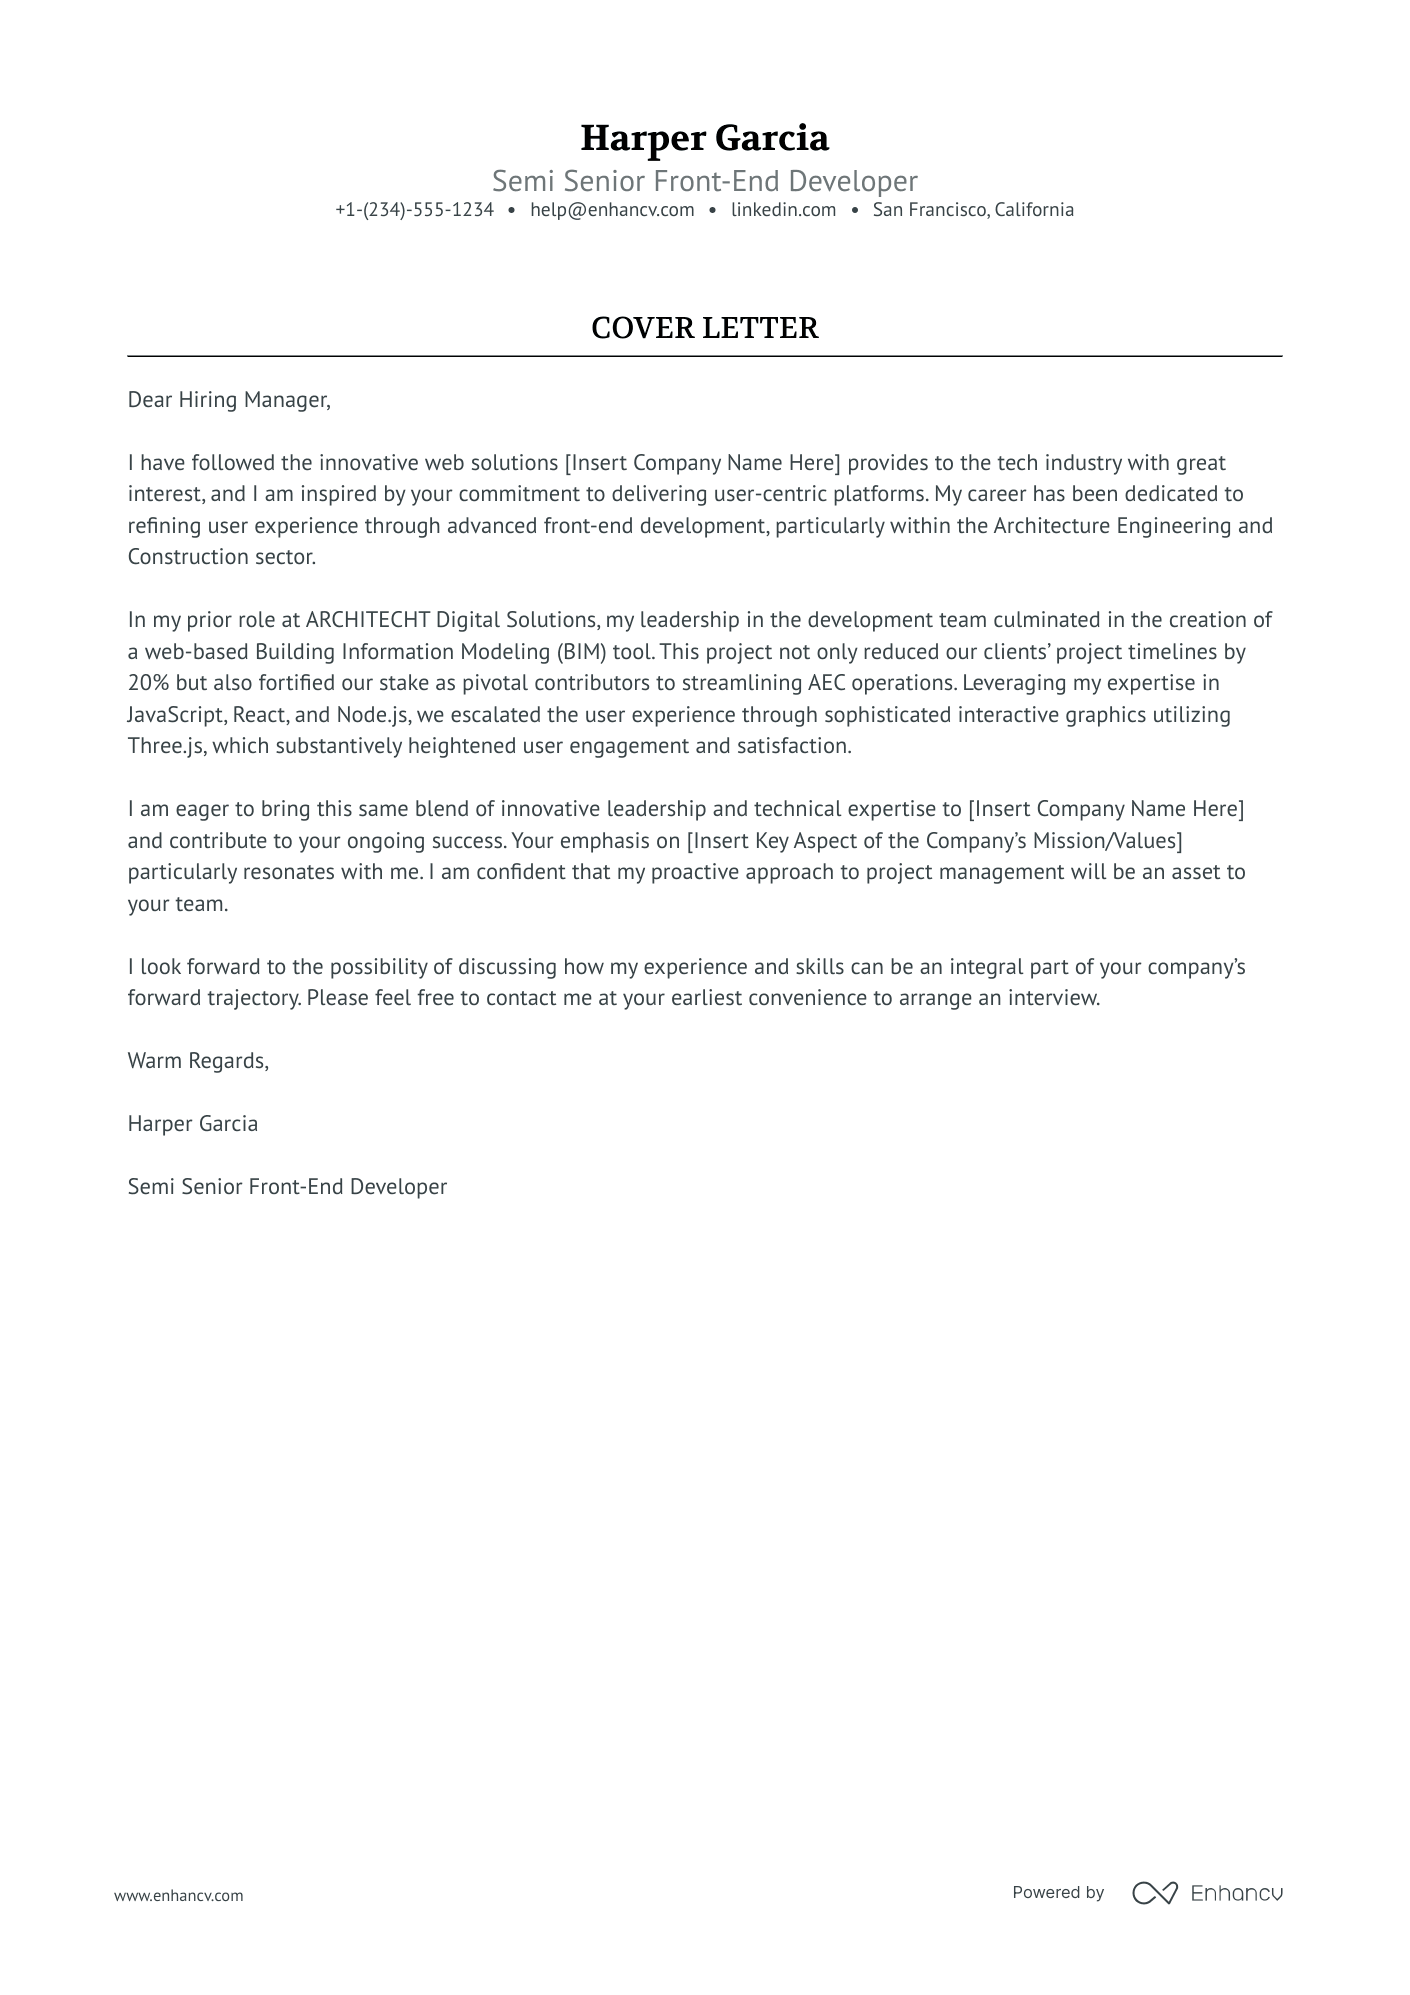 cover letter for front end developer internship